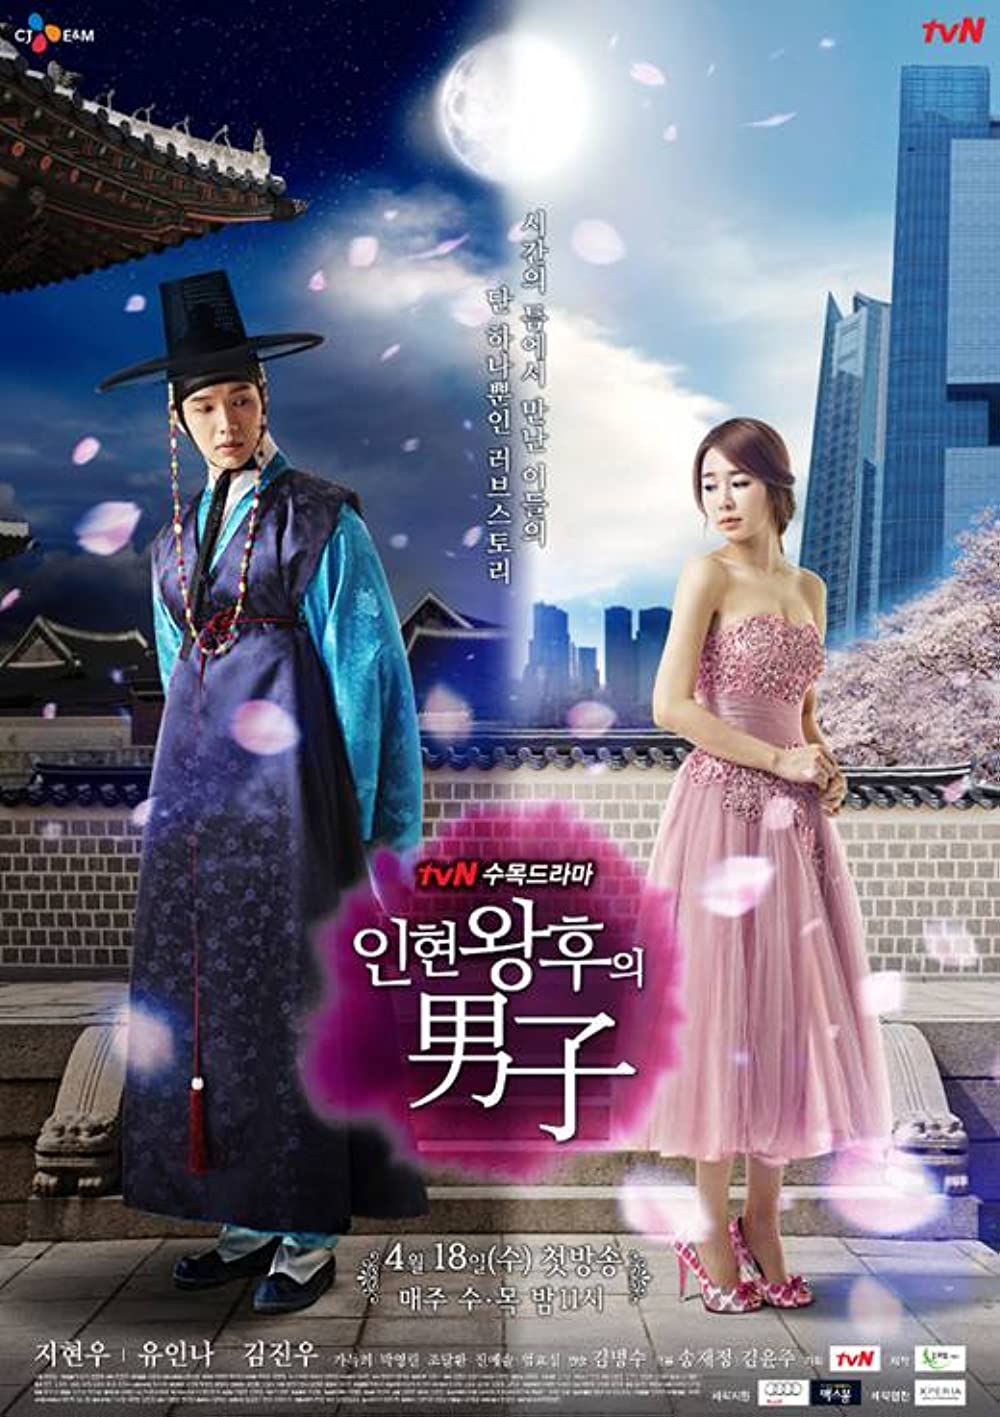 ดูหนังออนไลน์ฟรี Queen in hyun’s man (2012) EP.16 อินฮยอน มหัศจรรย์รักข้ามภพ ตอนที่ 16 (พากย์ไทย)